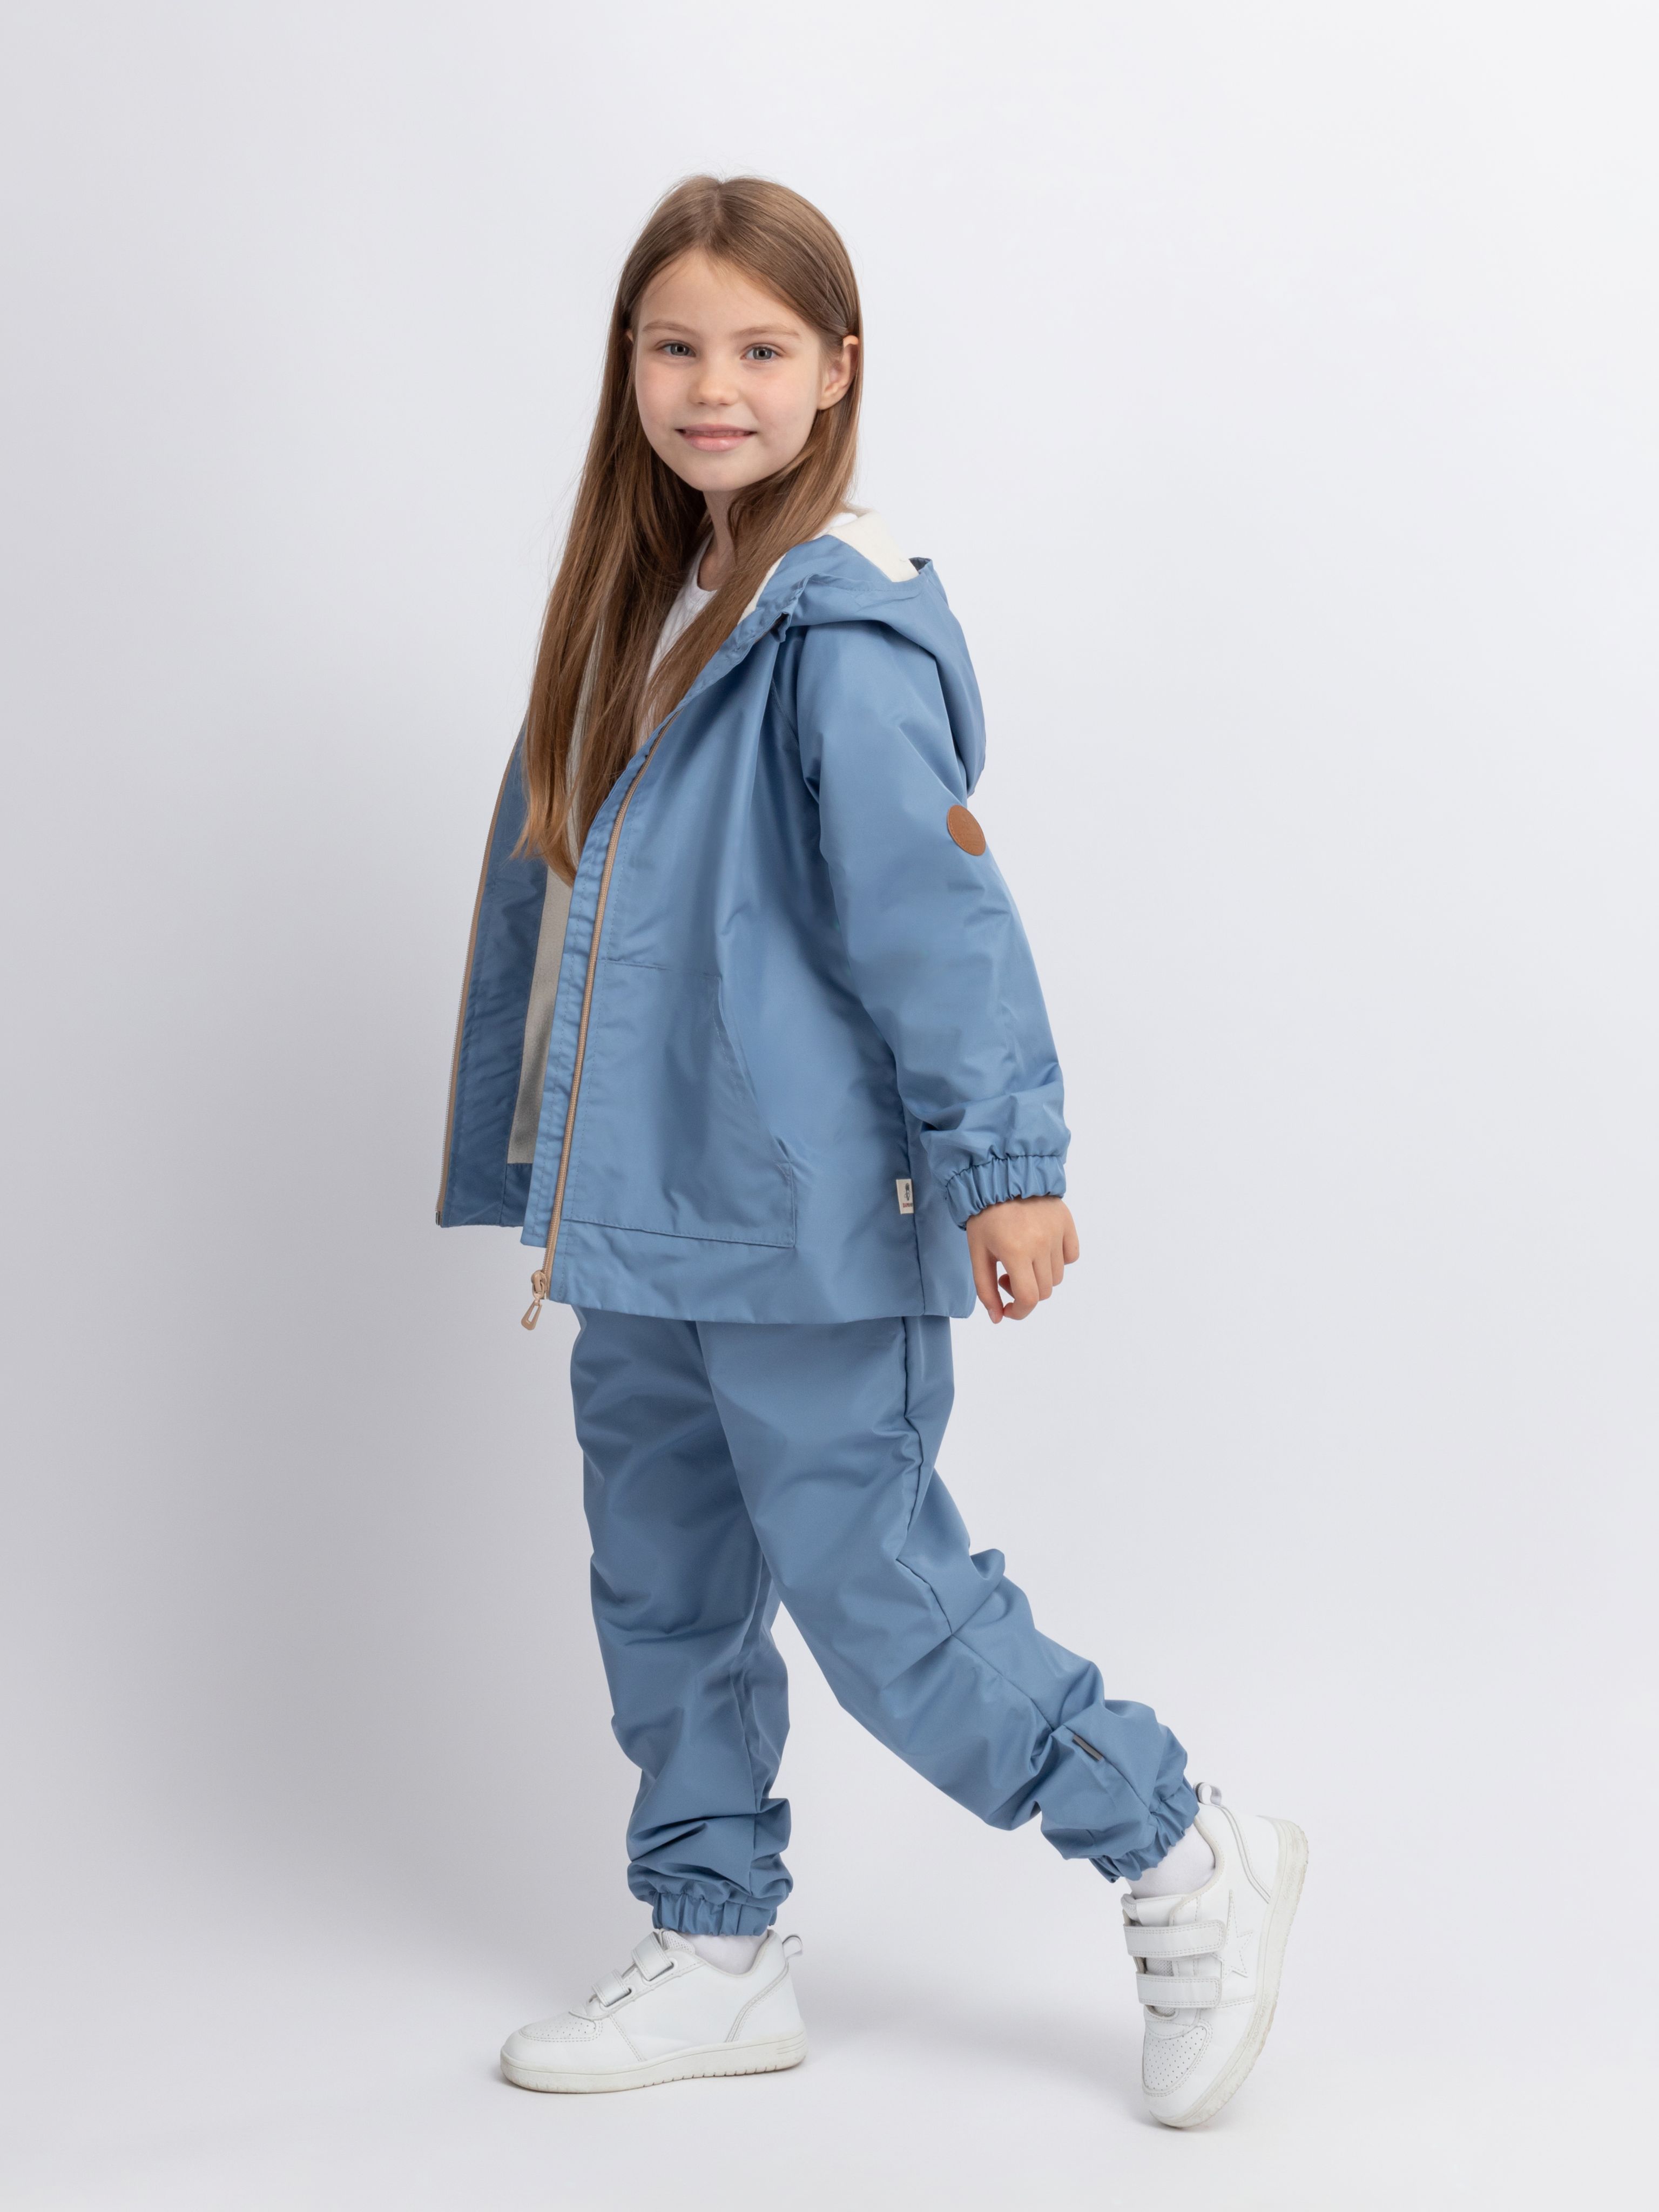 Комплект детской верхней одежды Даримир Велта, серо-голубой, 104